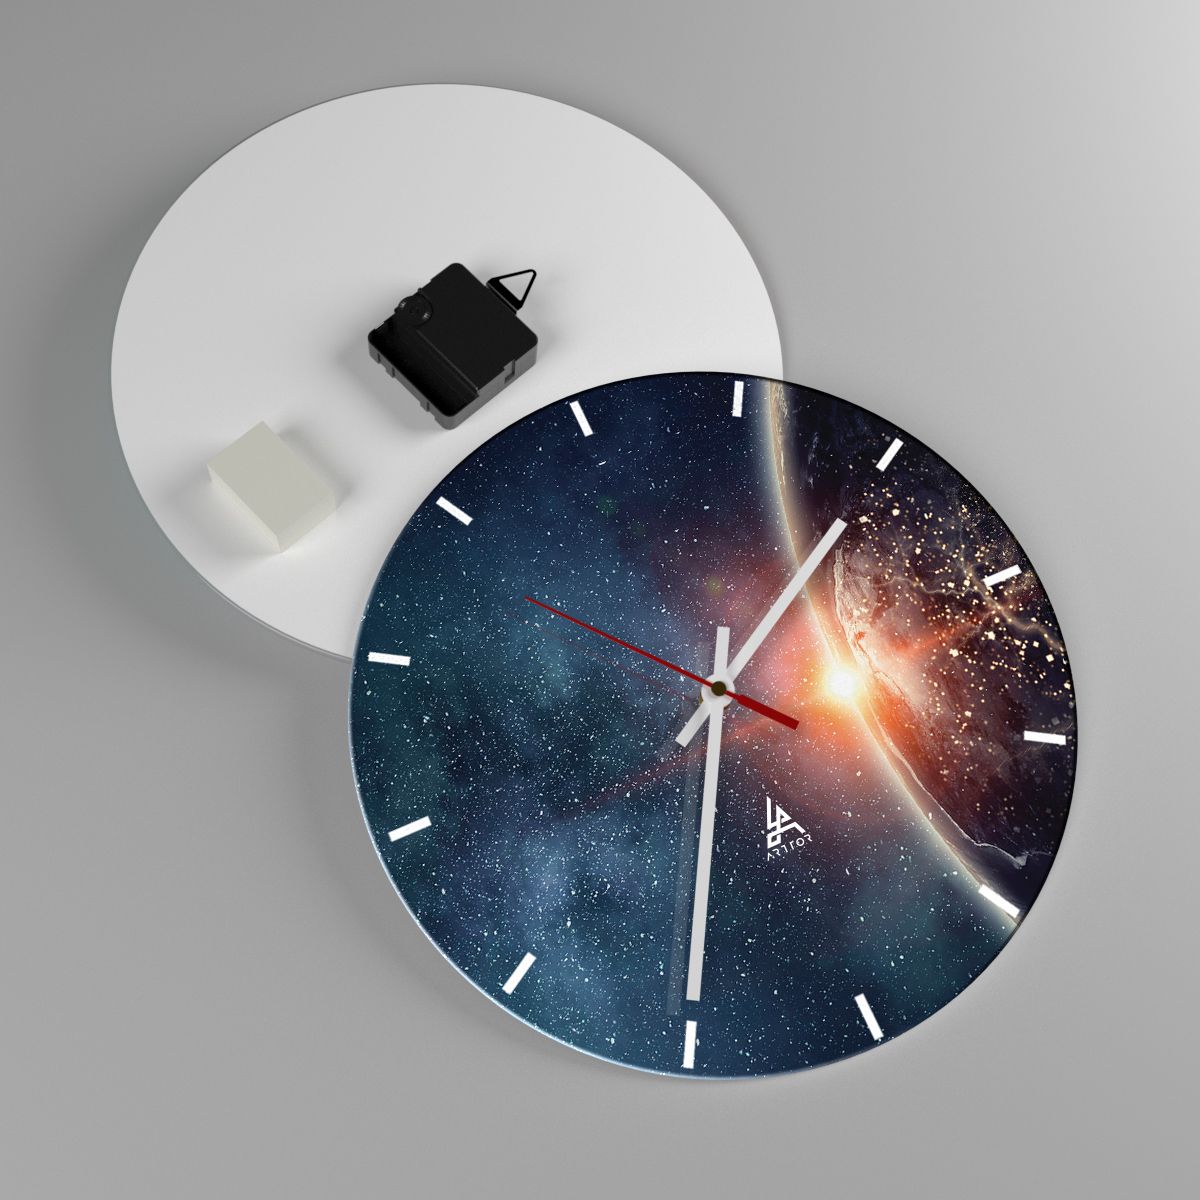 Wall clock Cosmos, Wall clock Galaxy, Wall clock Universe, Wall clock Abstraction, Wall clock Planets